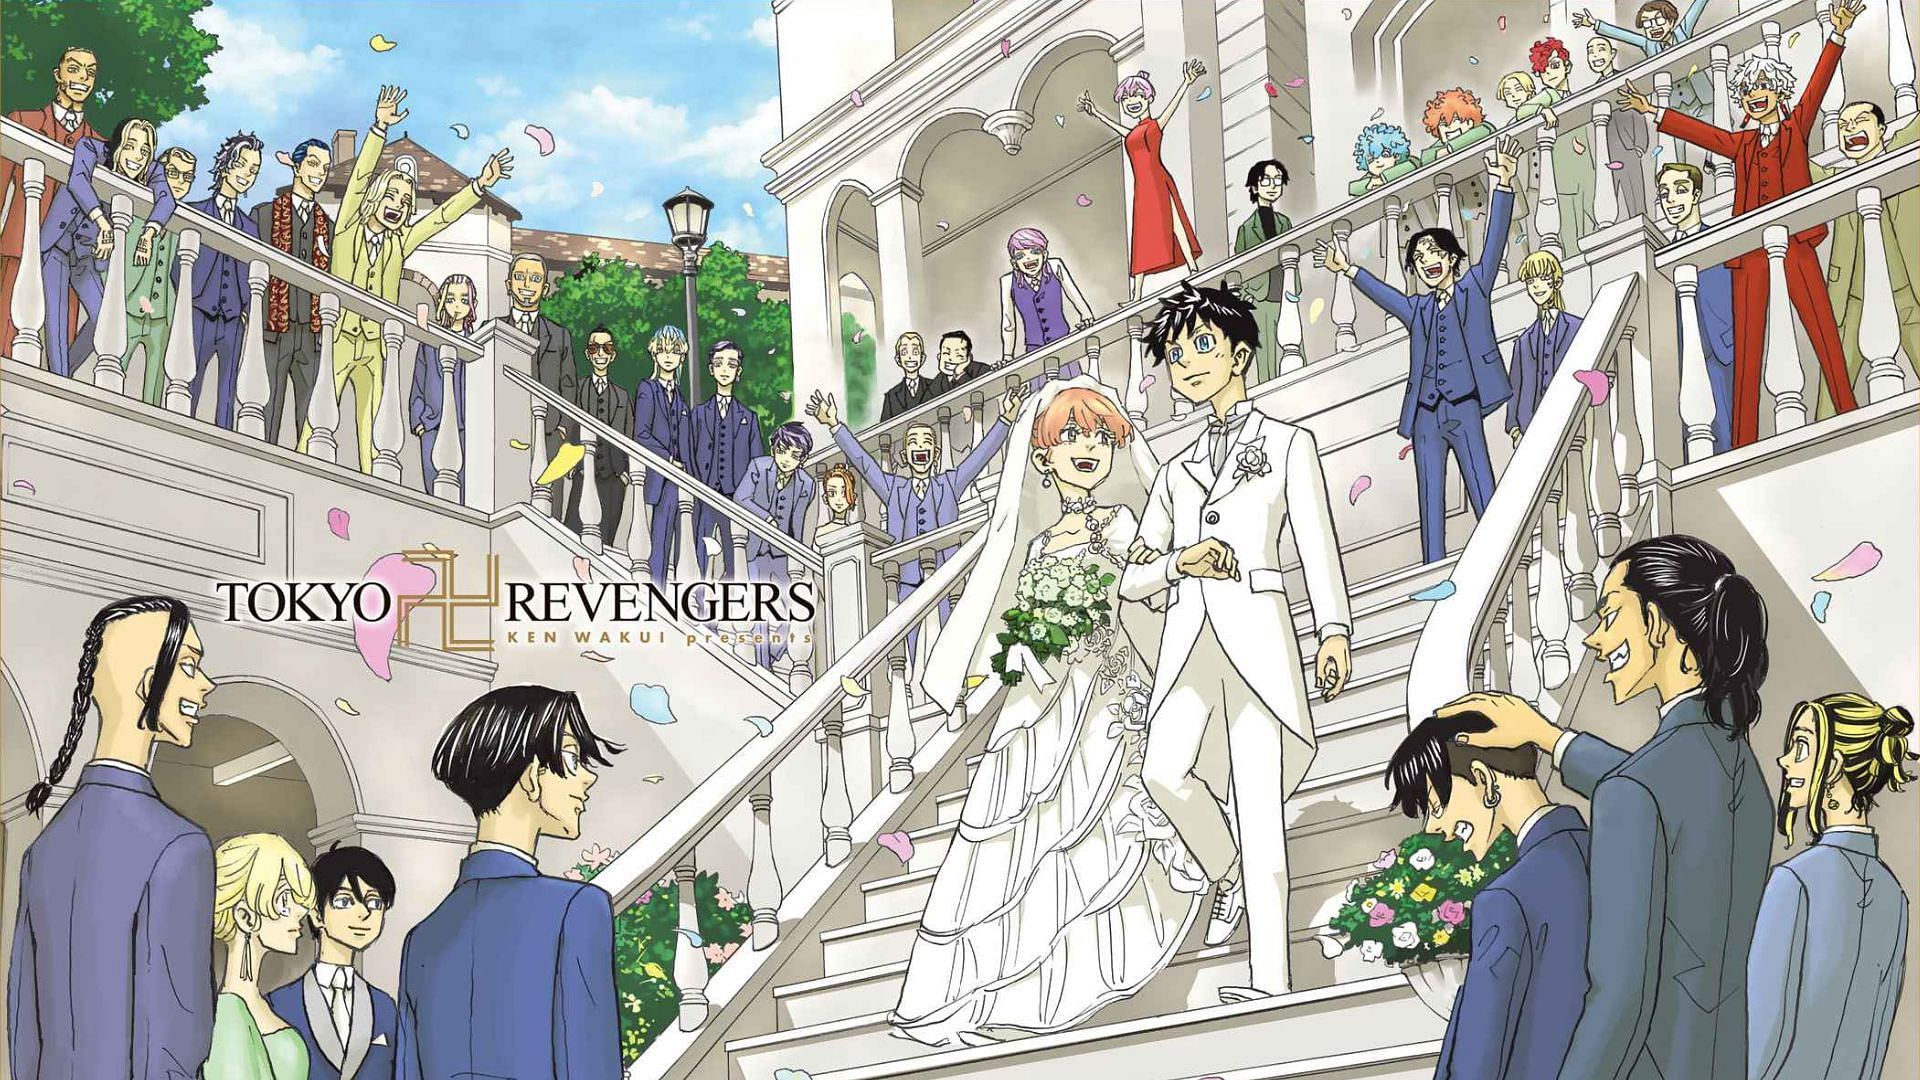 Tokyo Revengers manga's ending divided the fandom